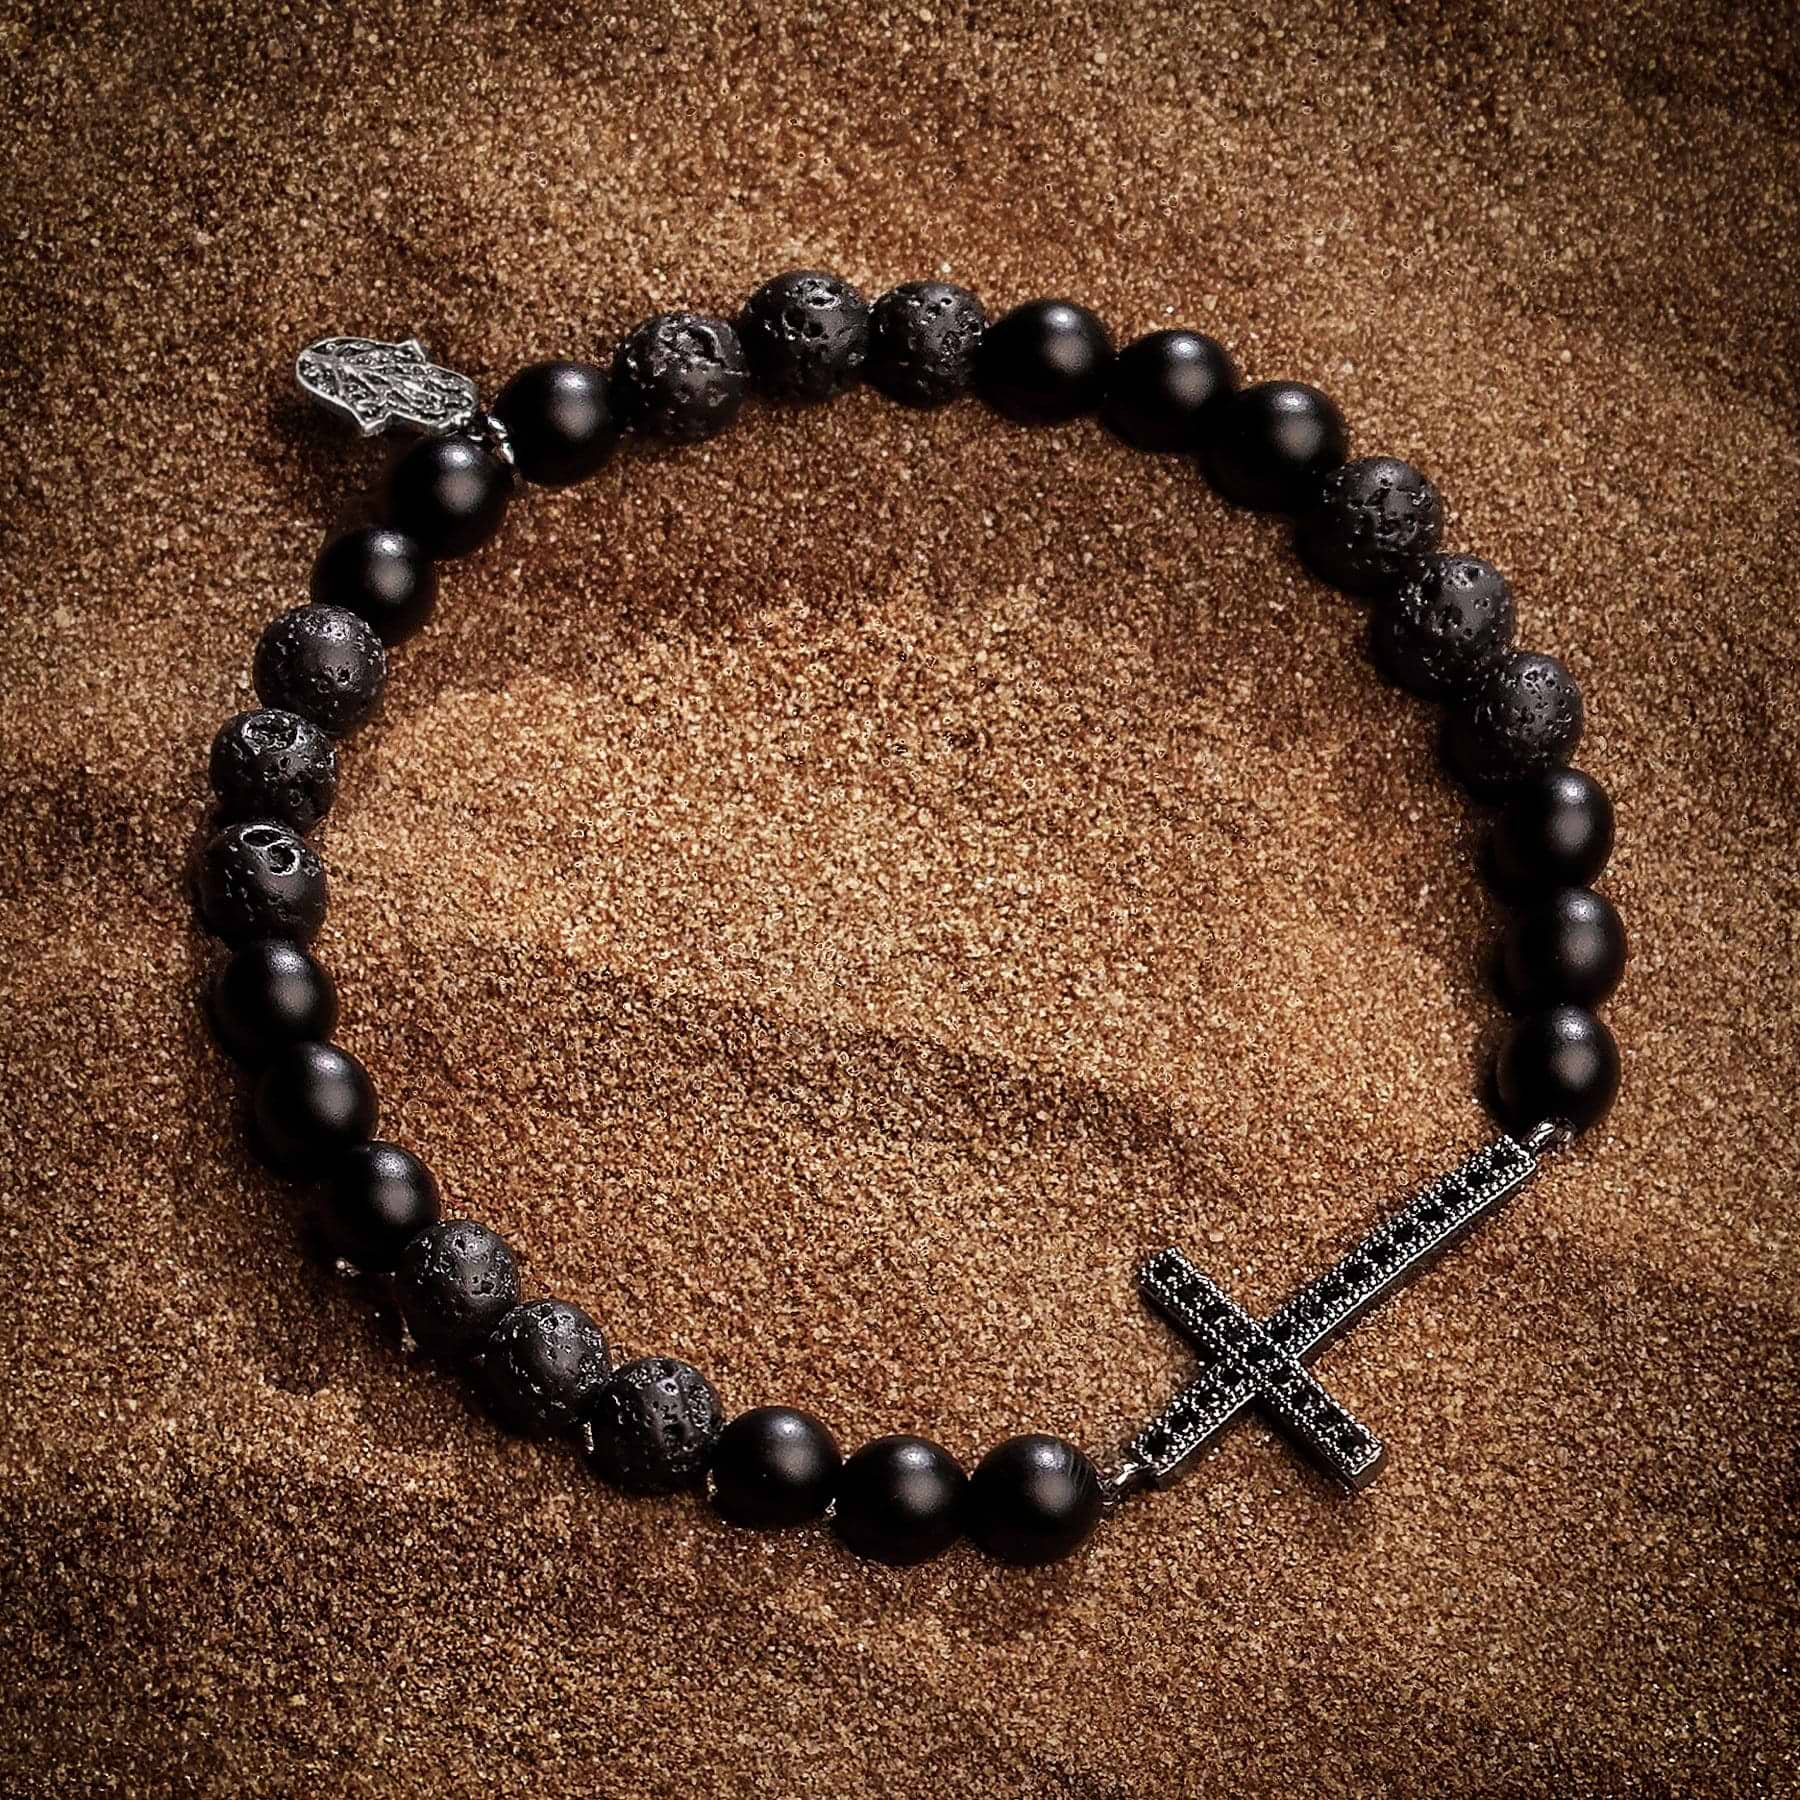 Rooted Faith - Lava Cross Bracelet